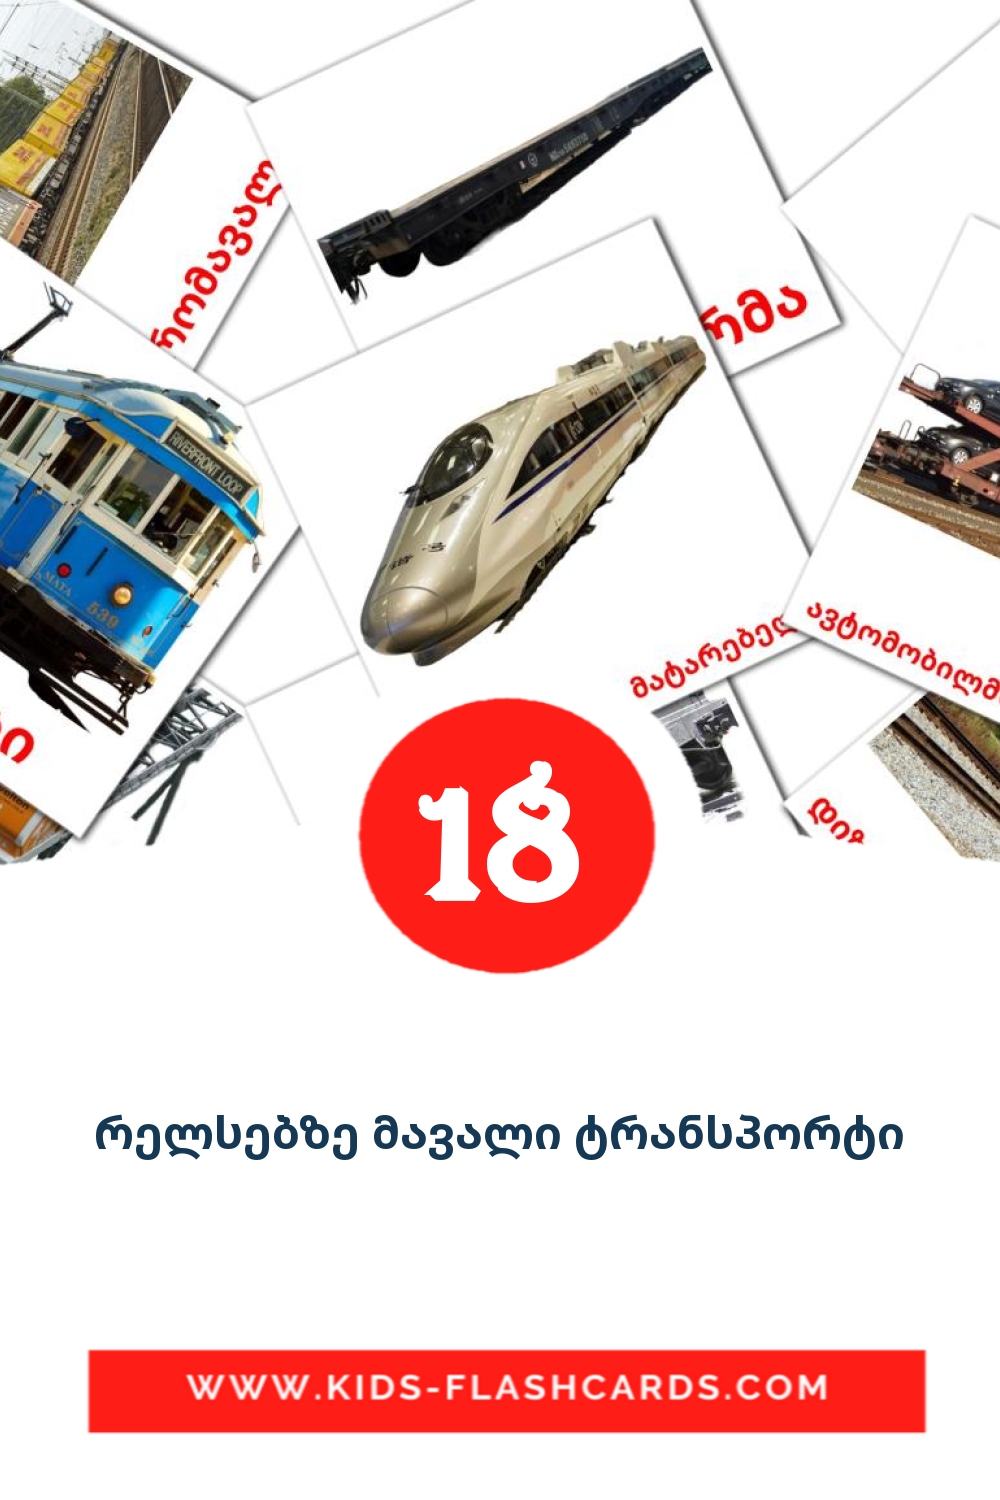 18 Cartões com Imagens de რელსებზე მავალი ტრანსპორტი para Jardim de Infância em georgiano